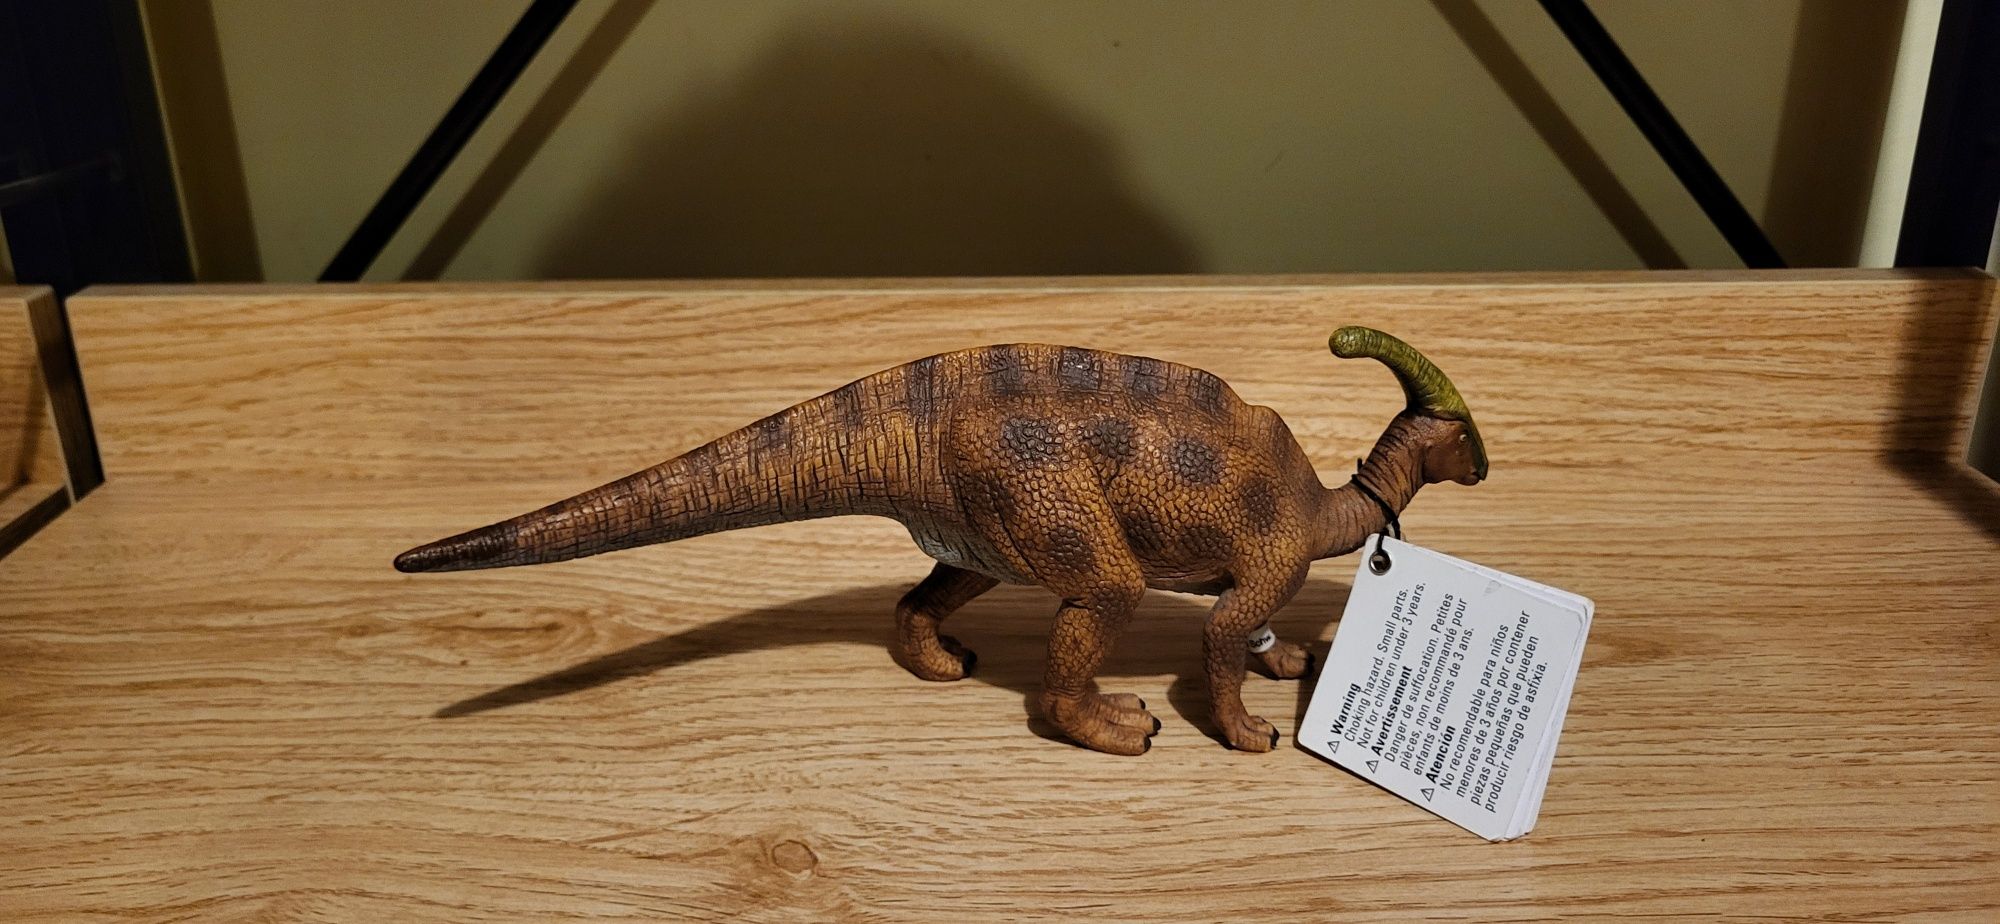 Schleich dinozaur parazaurolof figurka model wycofany 2006